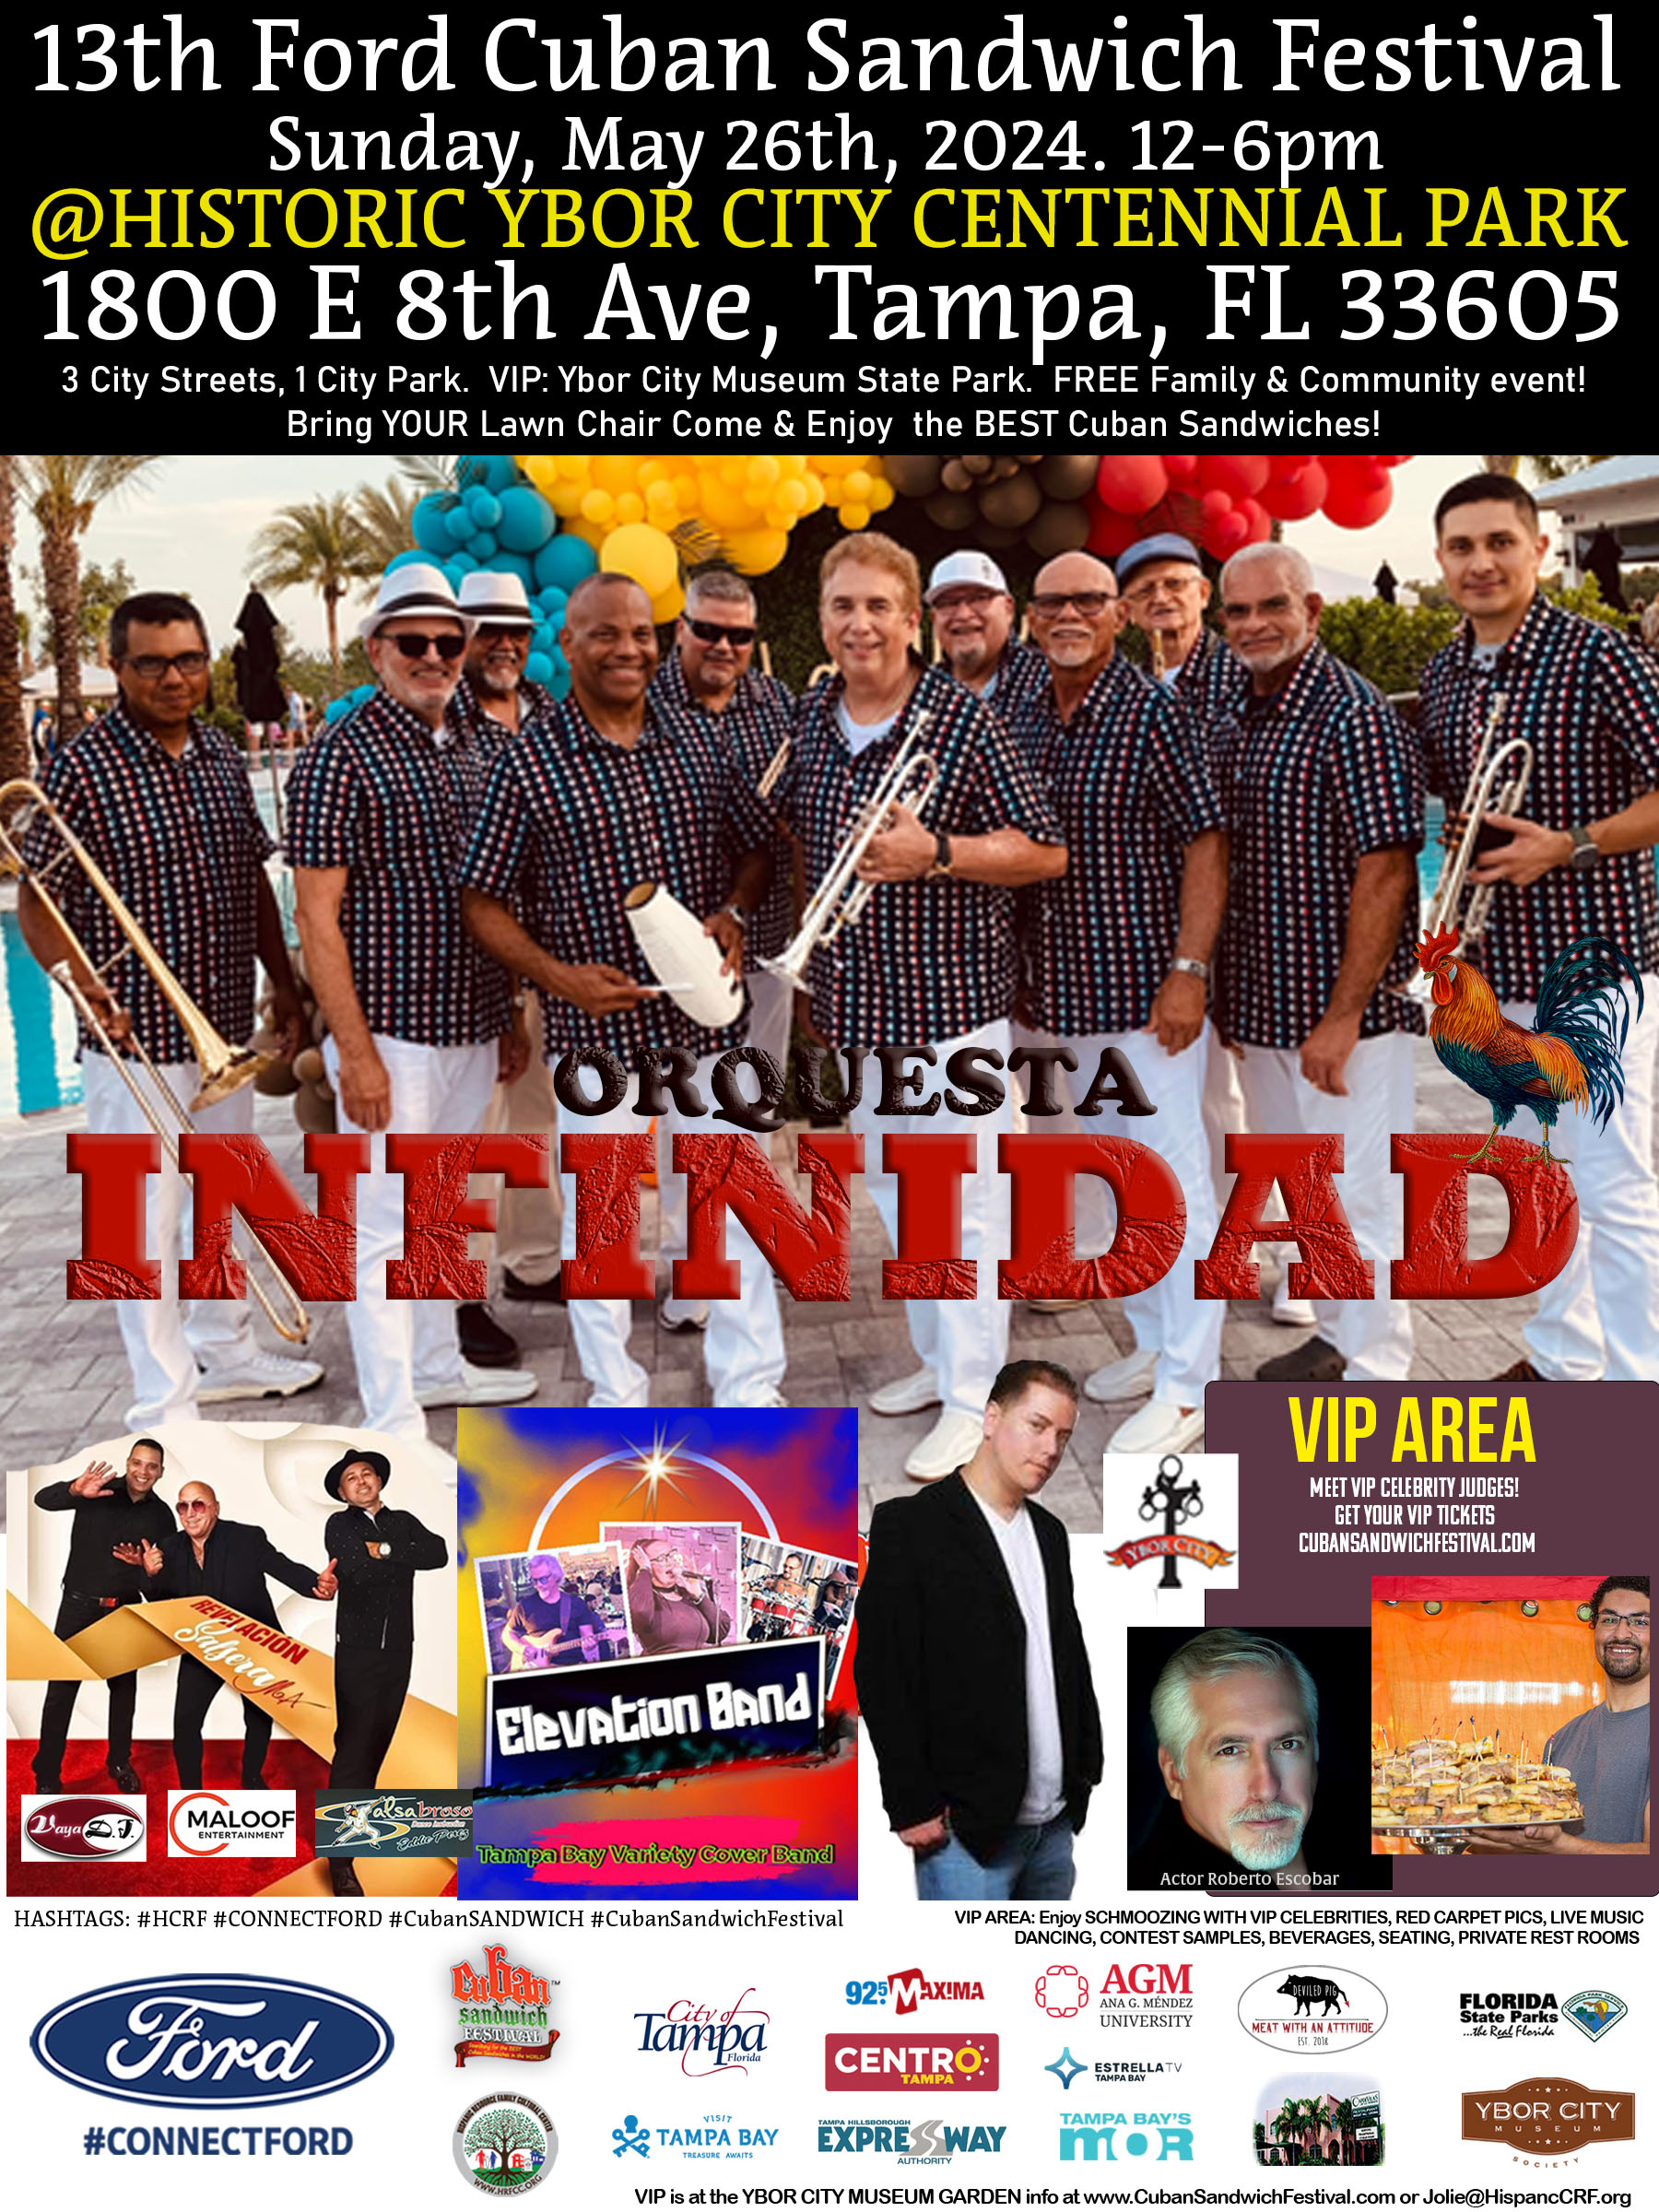 13th Annual Ford International Cuban Sandwich Festival, Hillsborough, Florida, United States